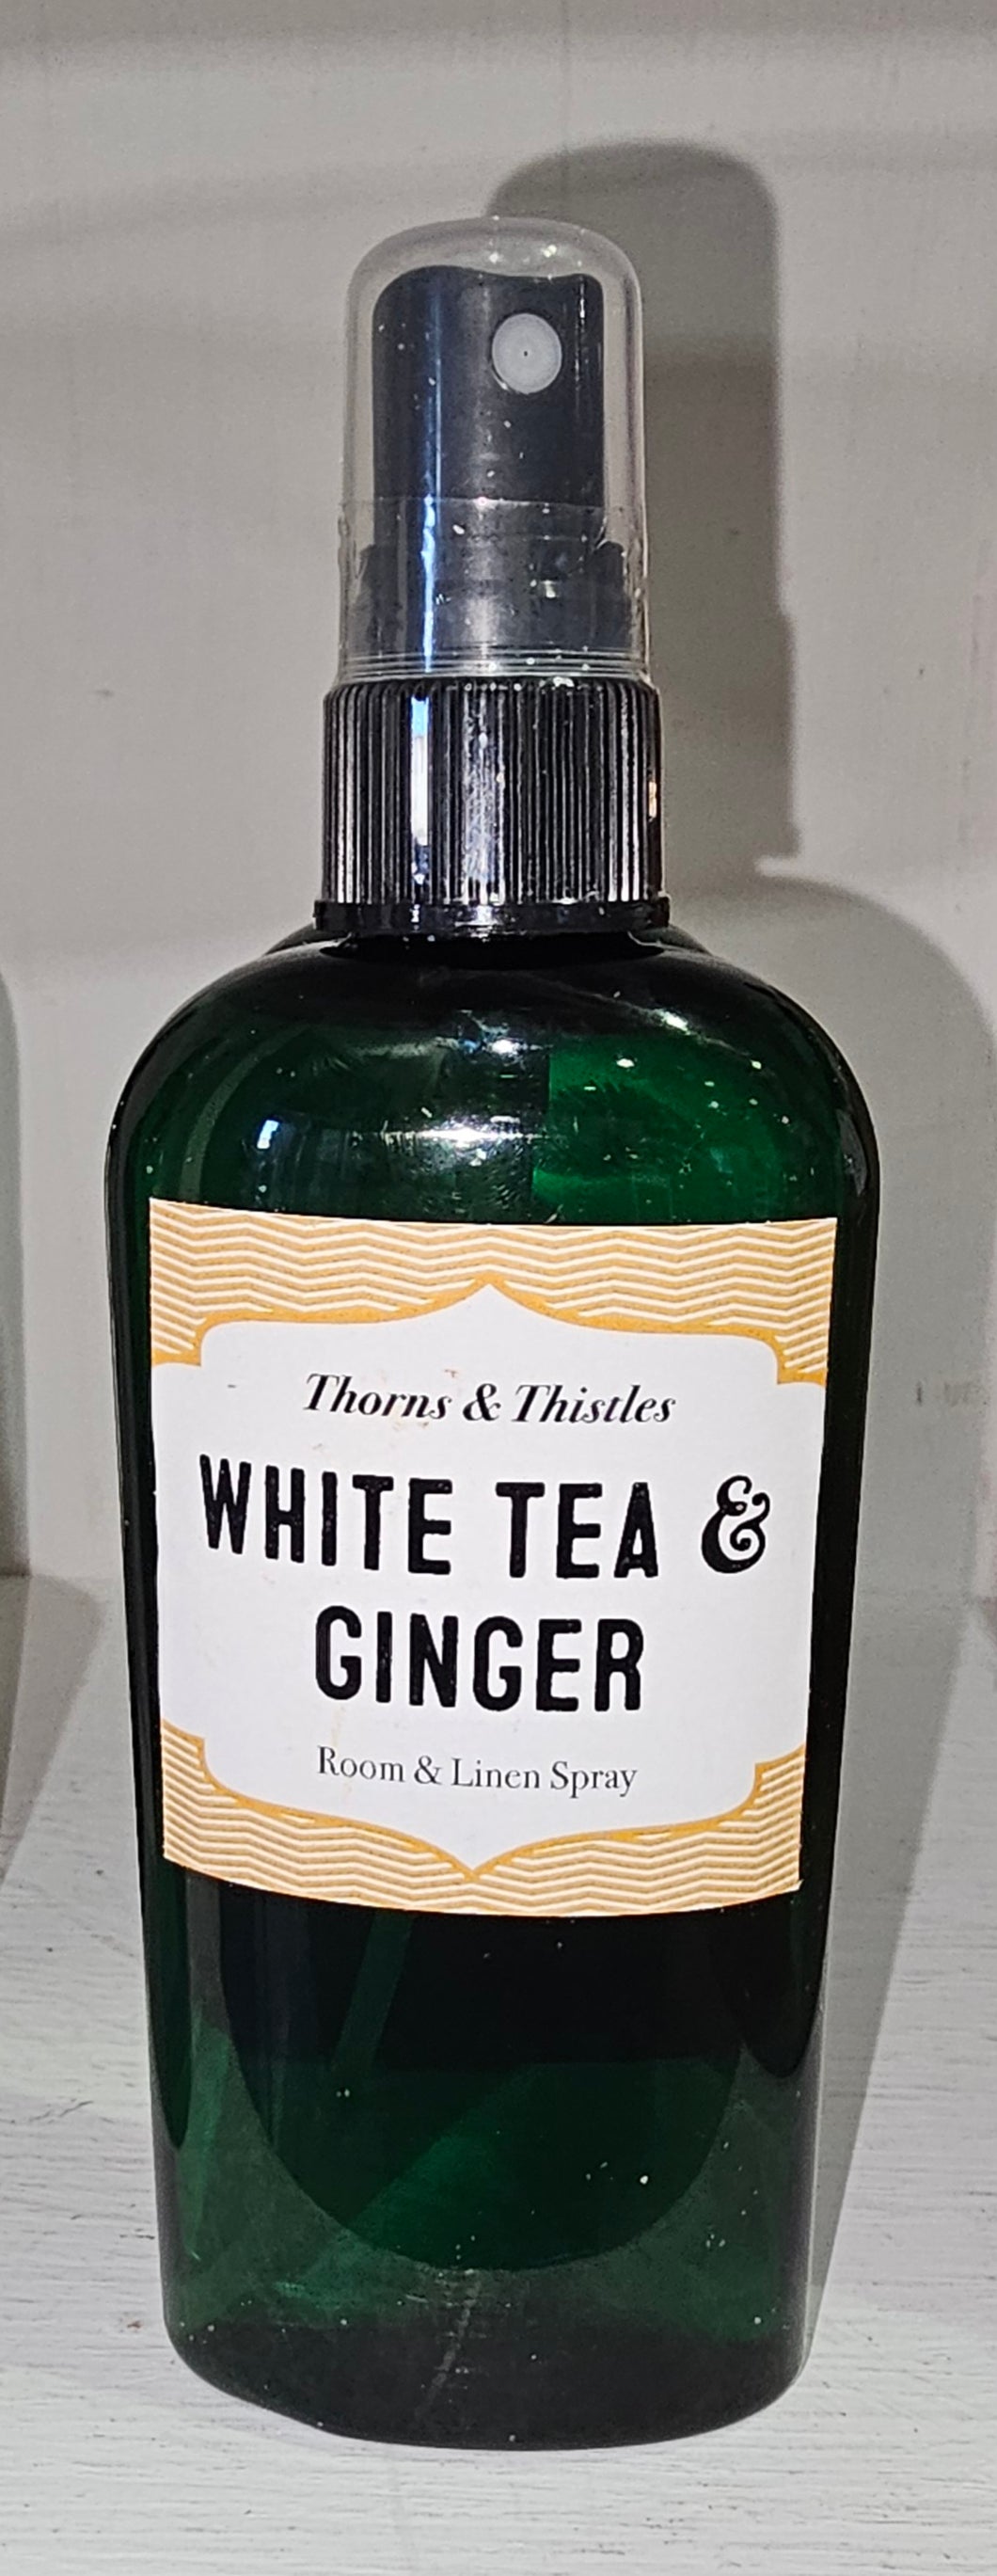 Room and linen spray- white tea & ginger